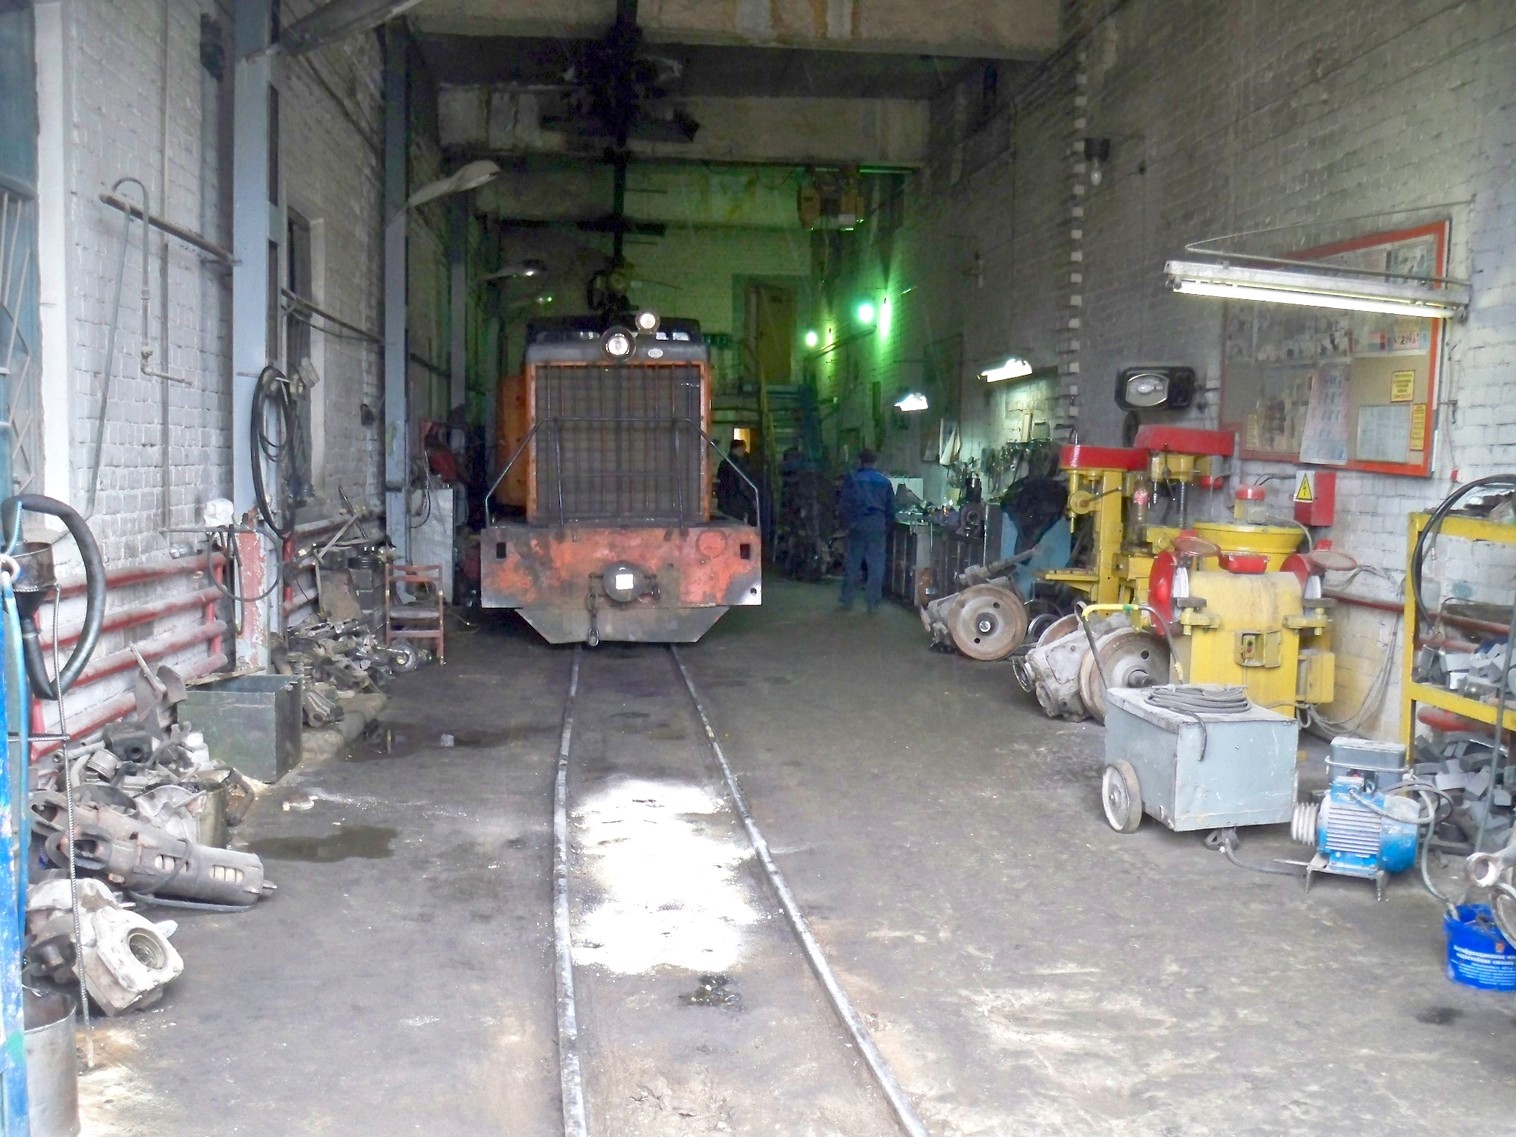 Узкоколейная железная дорога  Тверского комбината строительных материалов №2 — фотографии, сделанные в 2013 году (часть 1)